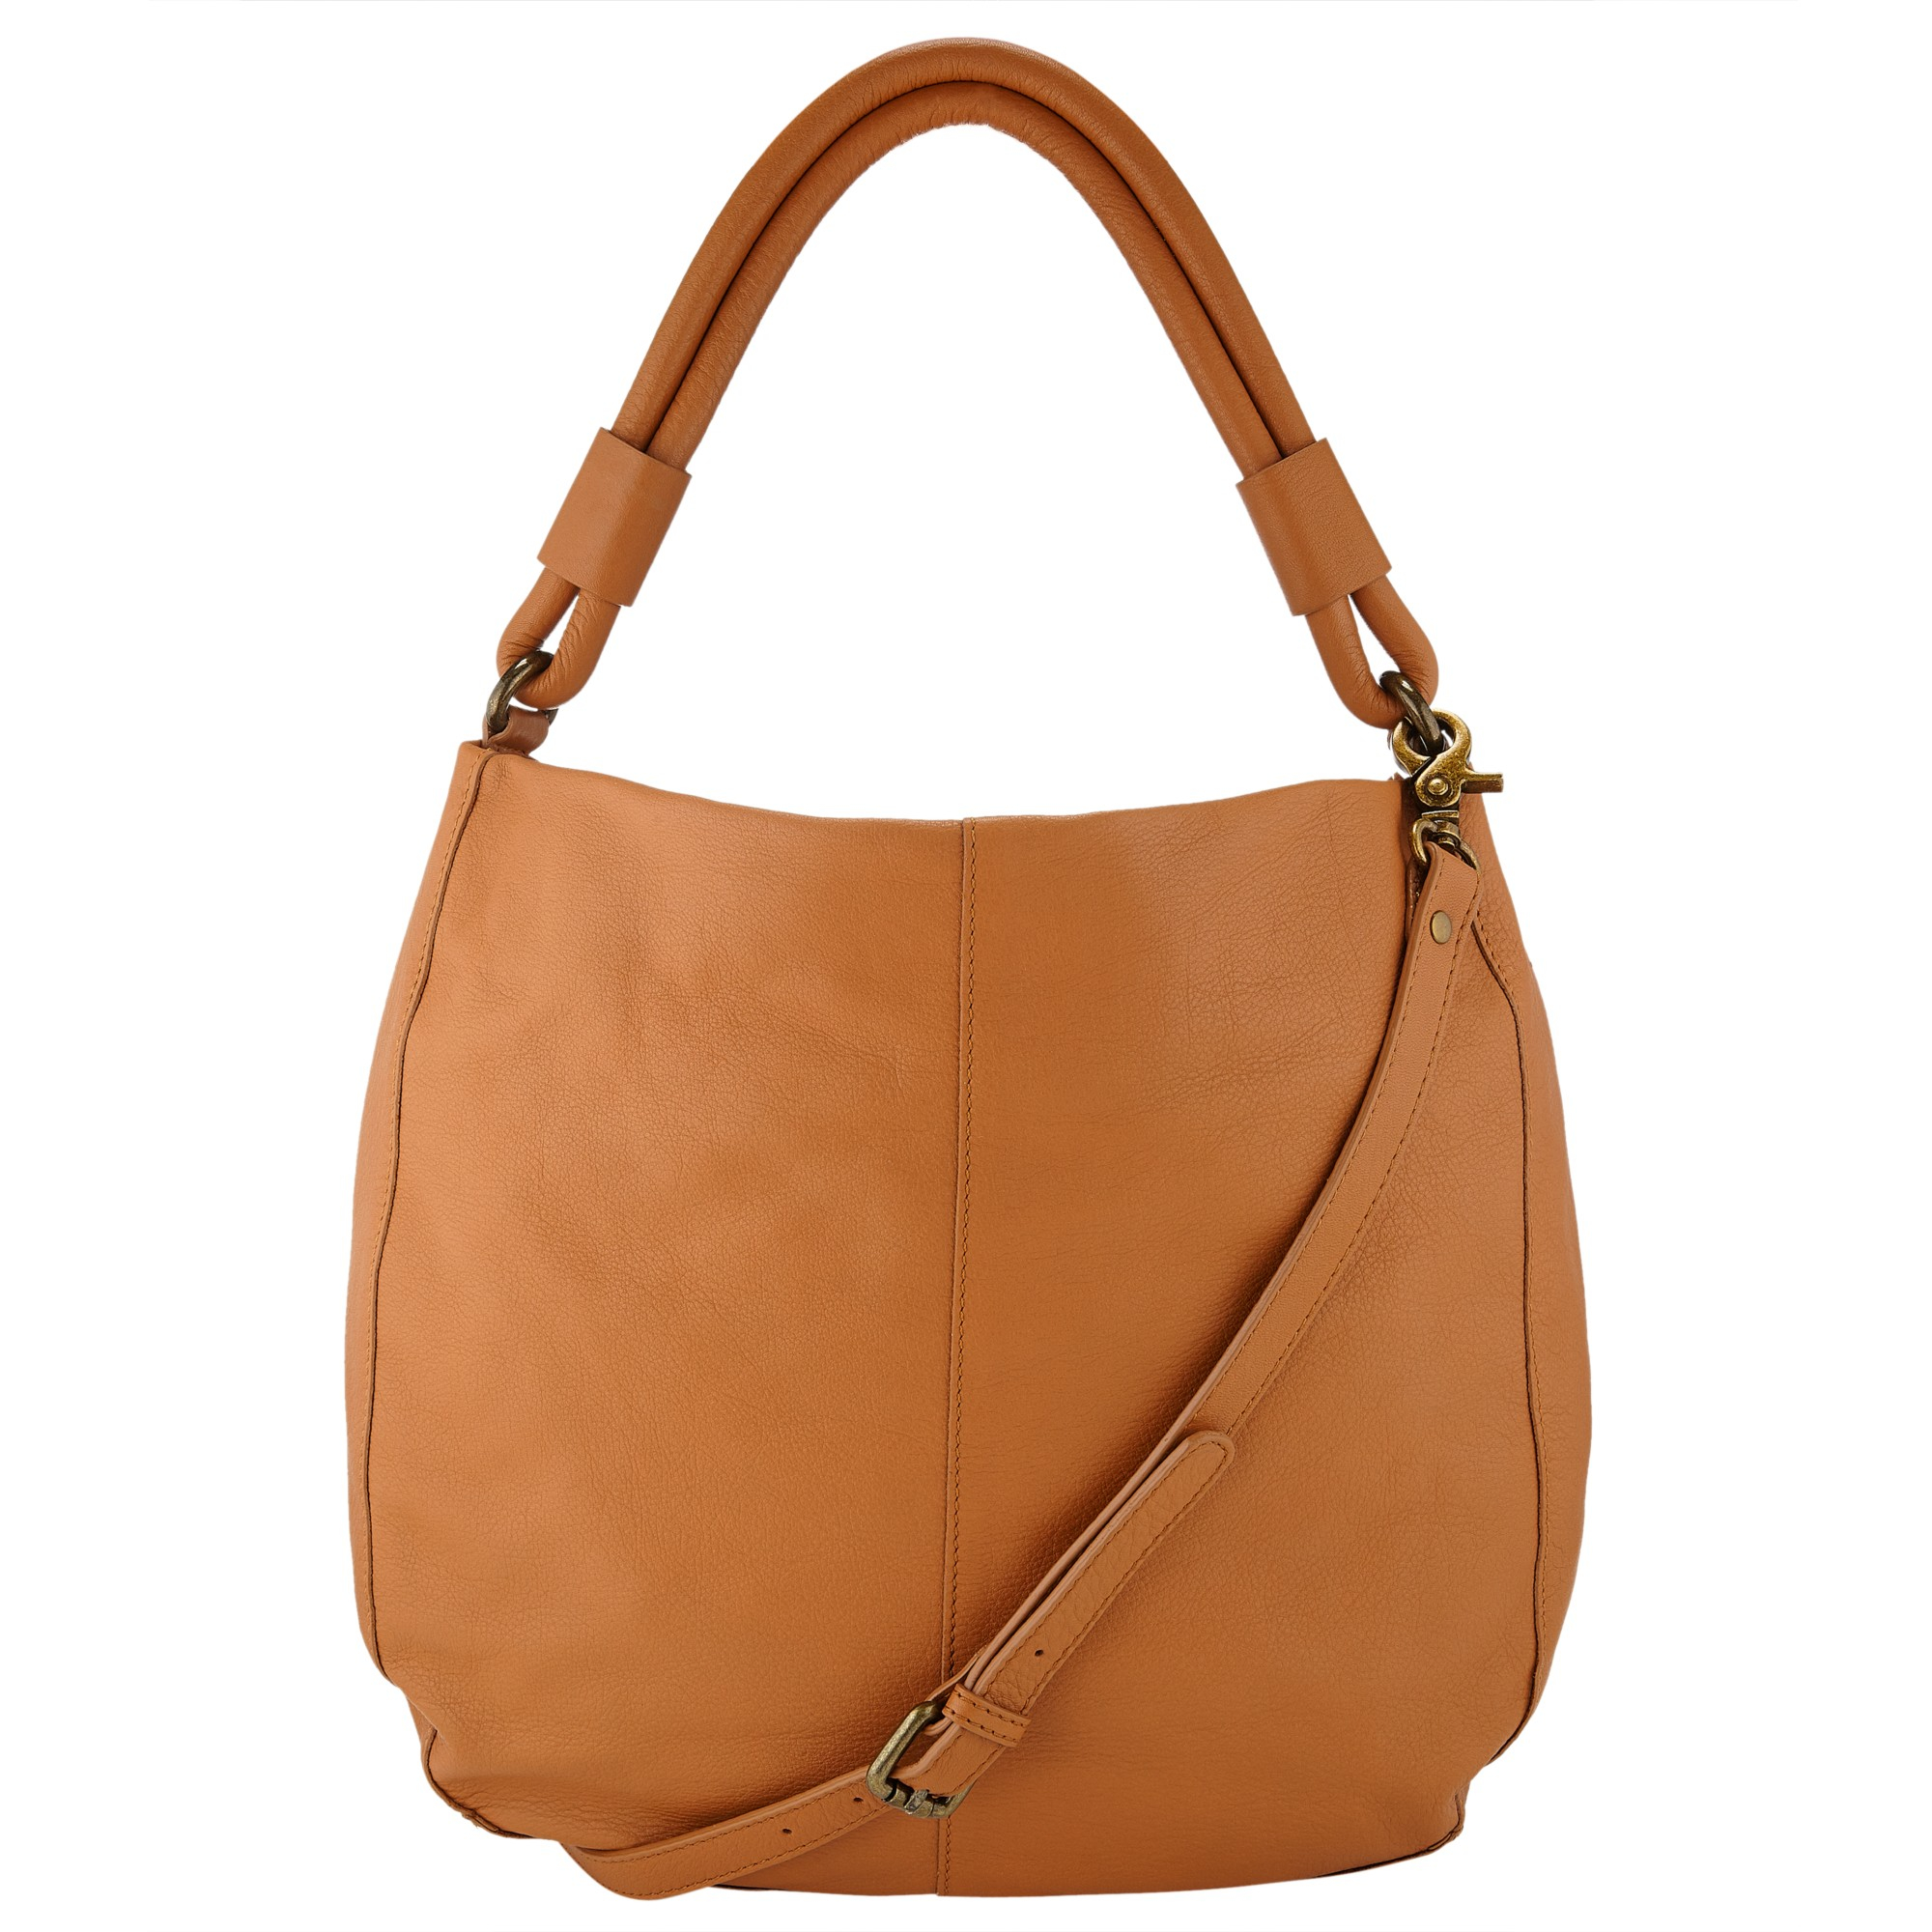 John lewis Stanley Leather Hobo Bag in Brown (Tan) | Lyst